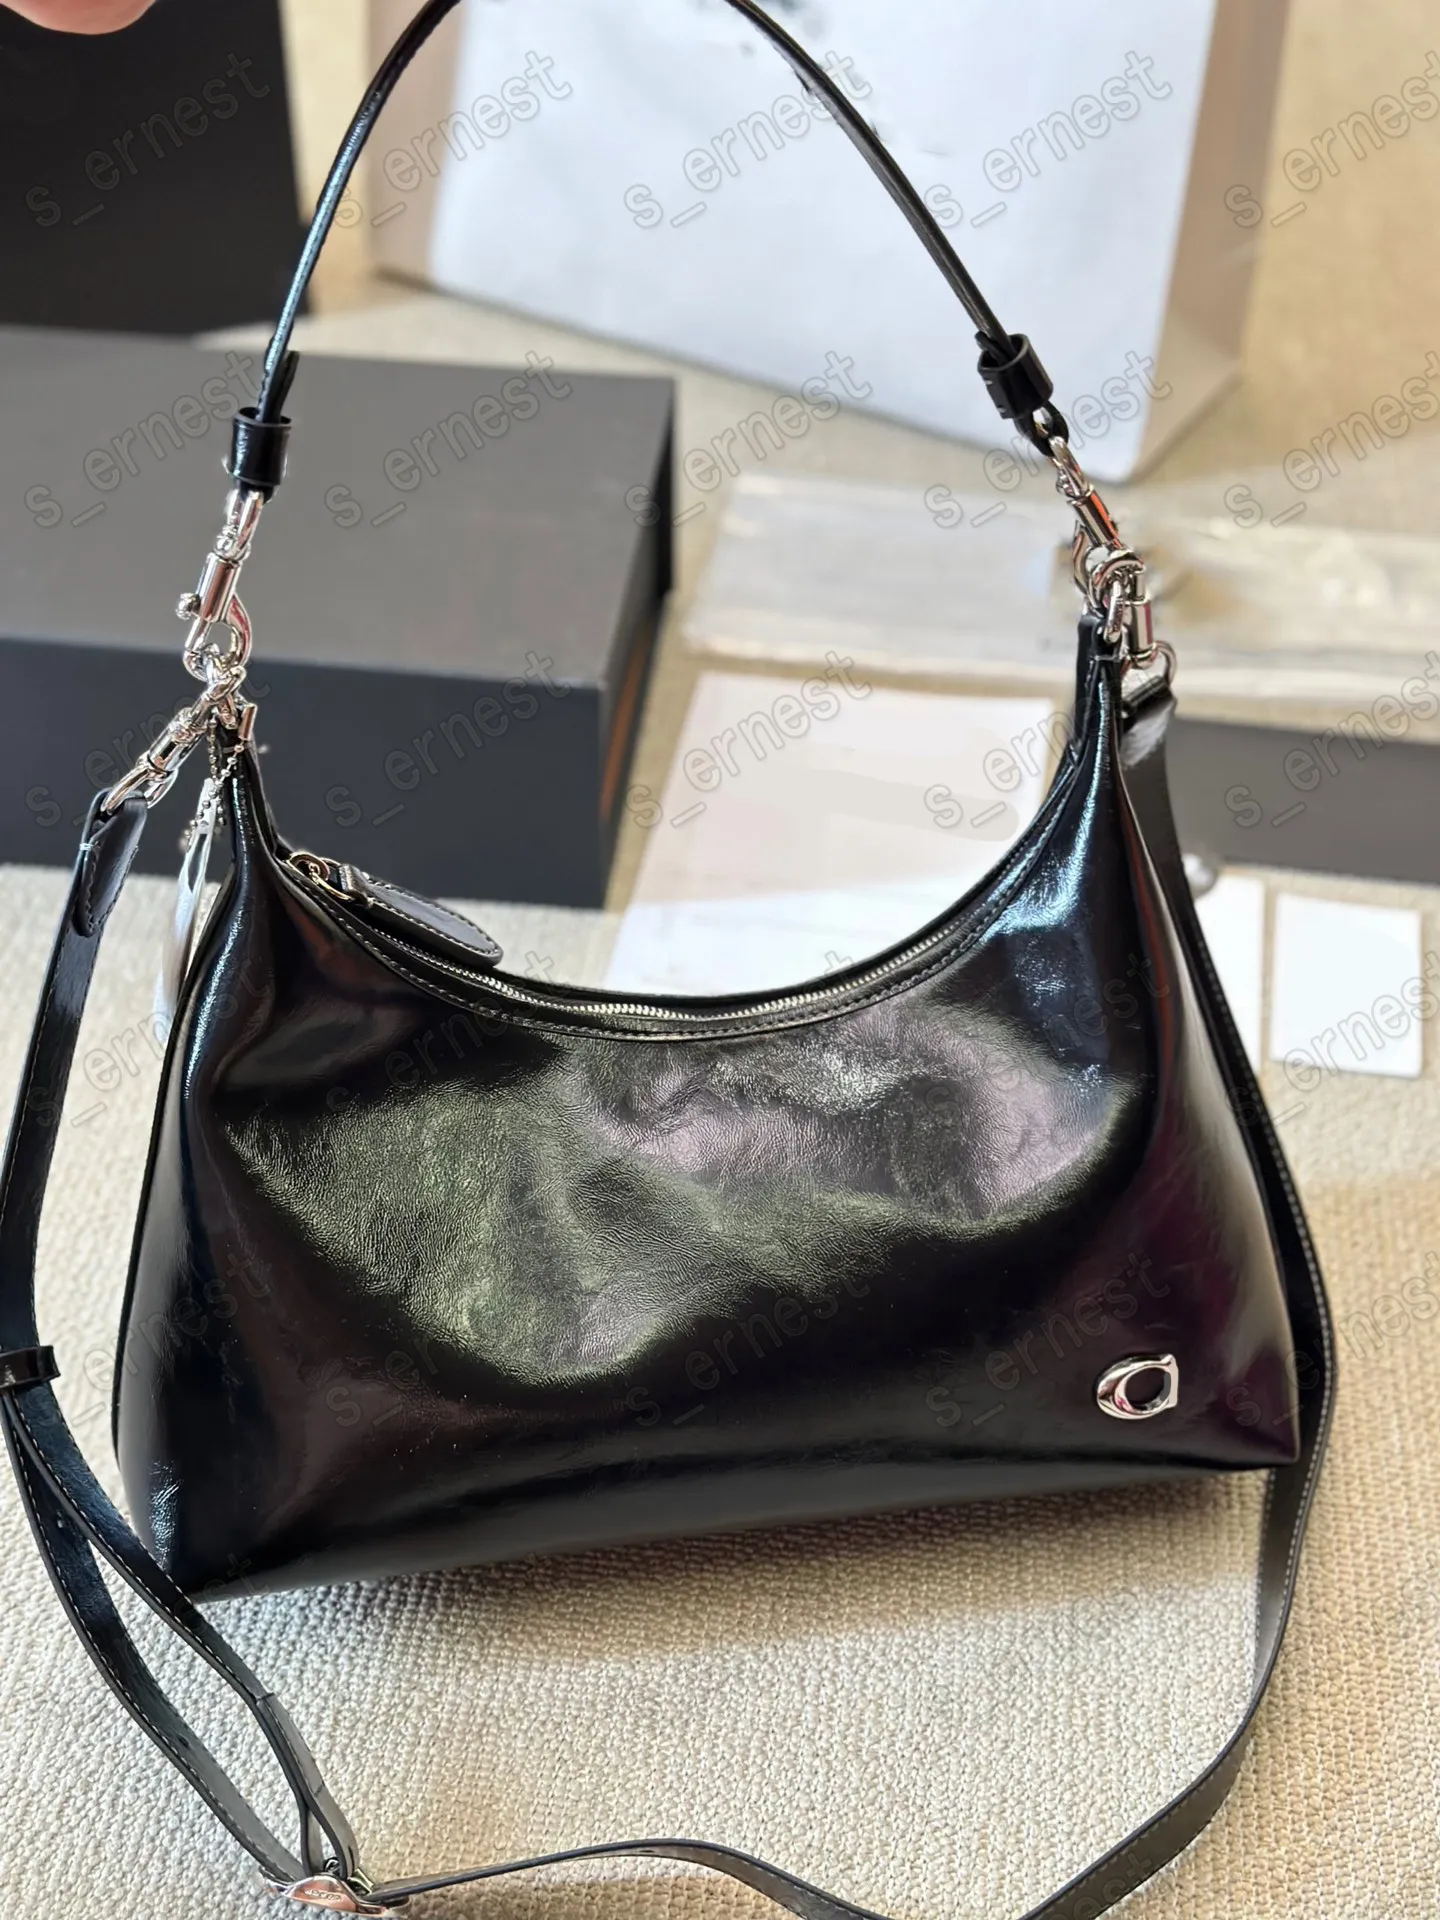 Juliet Women's Bag Patent Leather Tote Bag Versatile Fashion Shoulder Bag Satchel Hobo Bag Girl Brand Designer Handbags